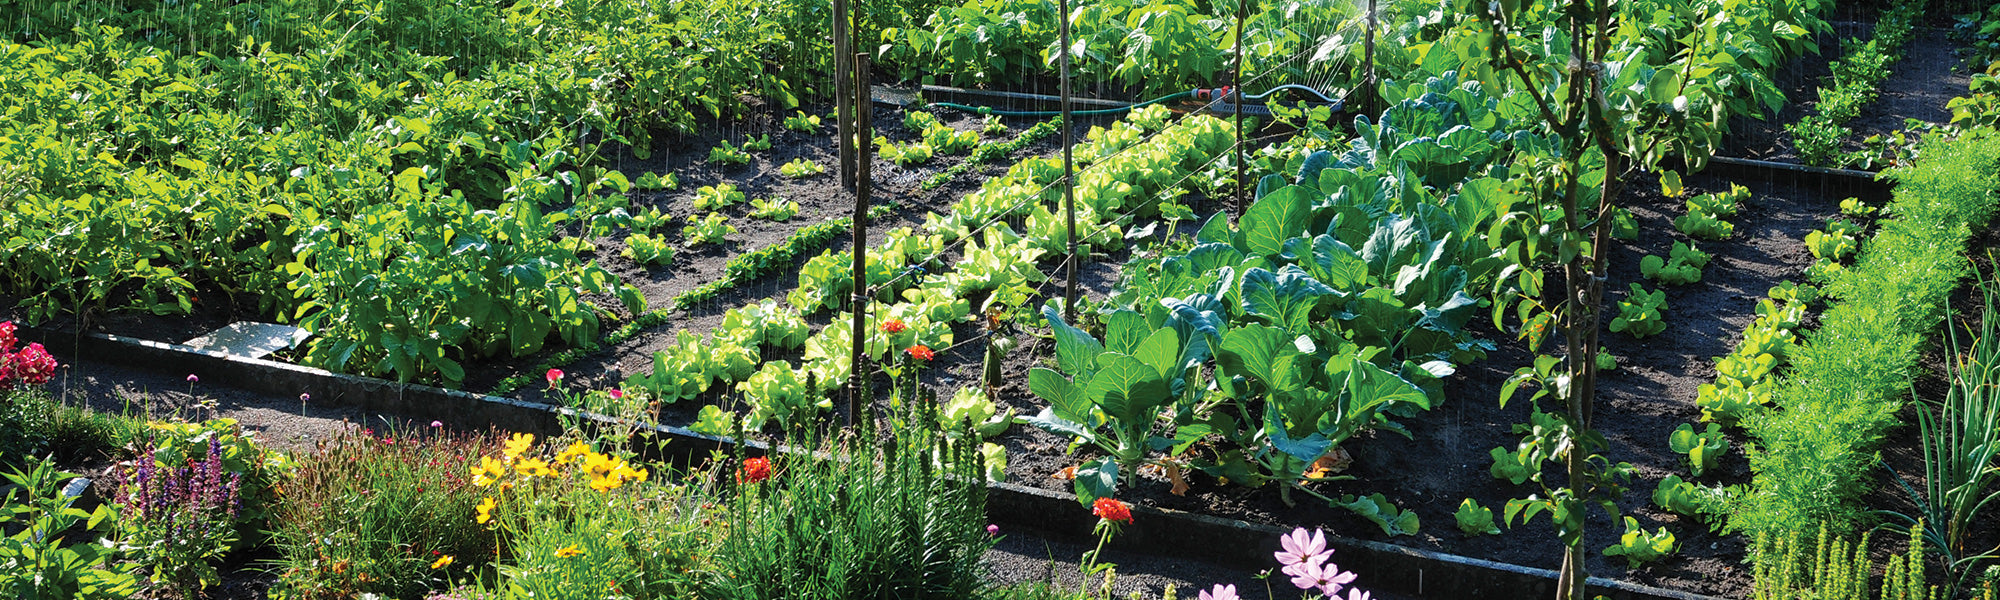 Légumes incontournables pour jardinière naturelle